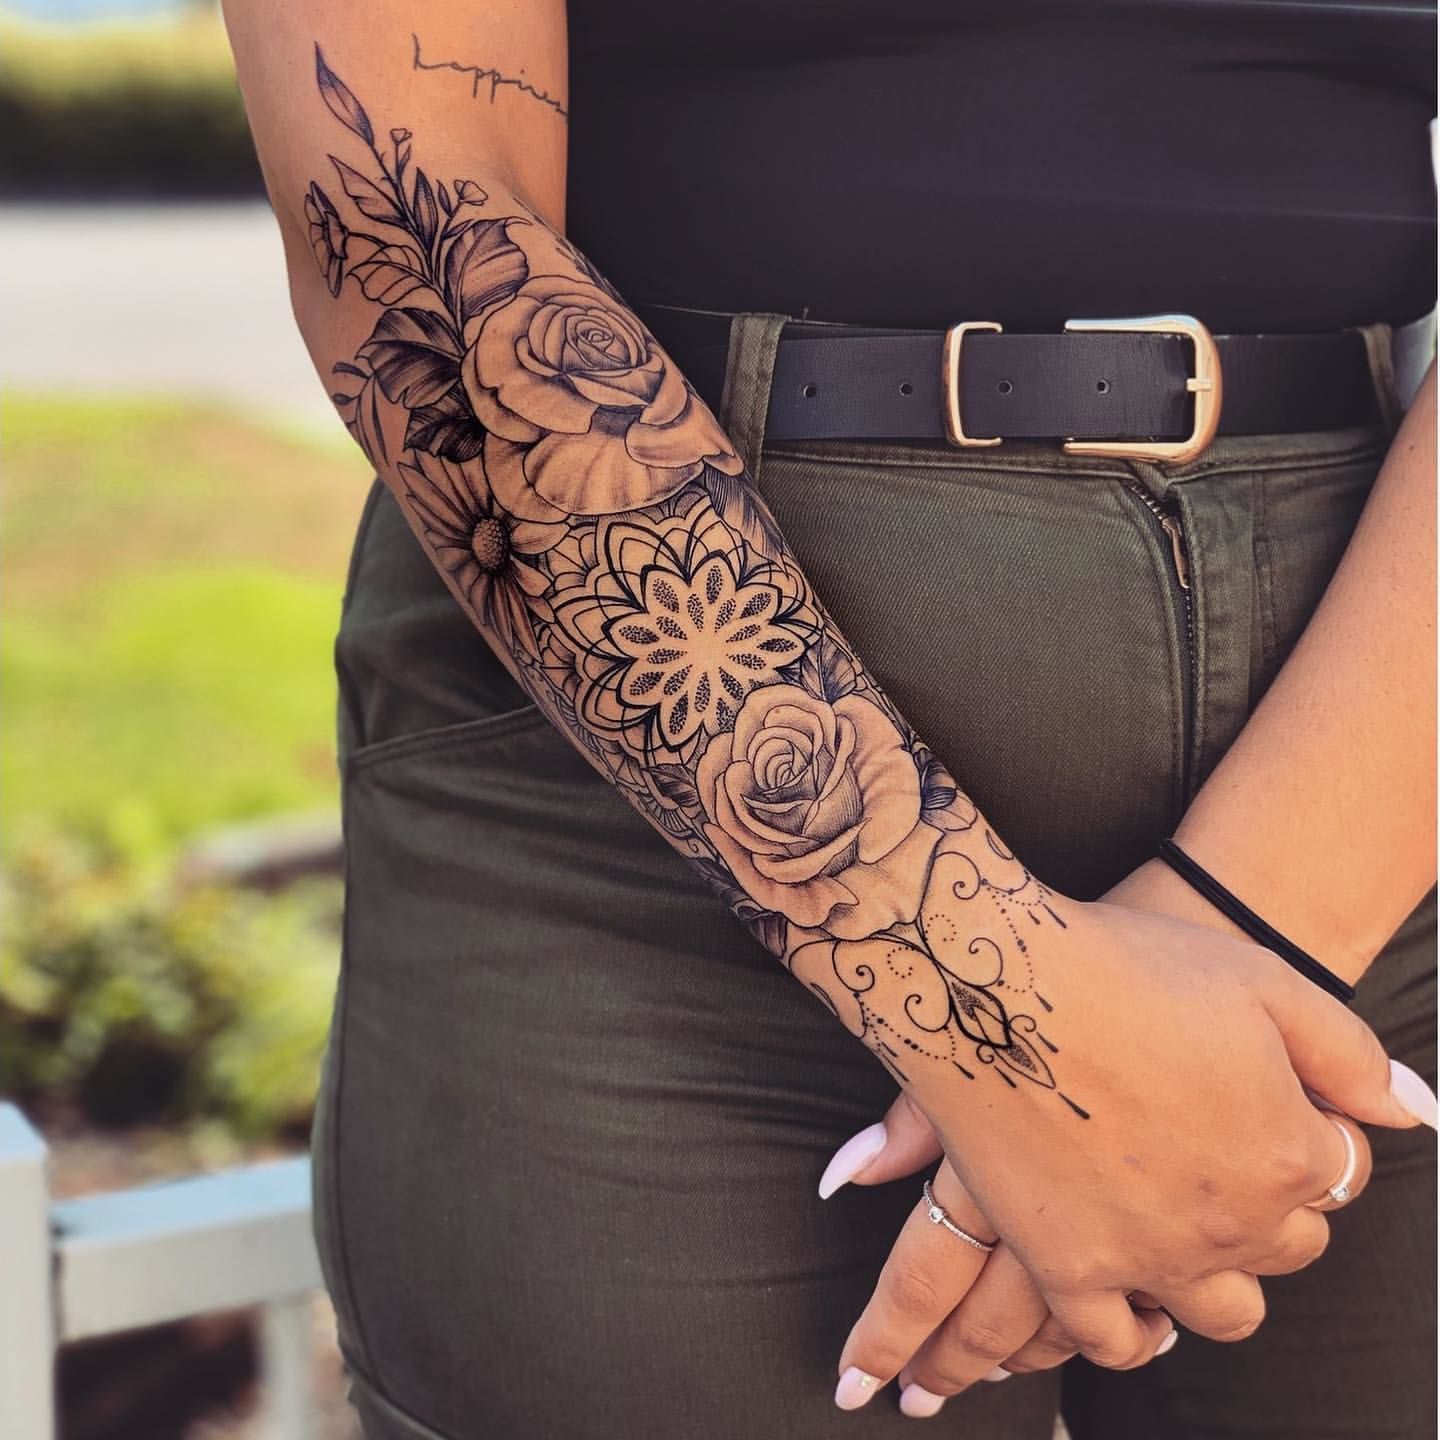 img/arm-tattoo-oberseite-beliebte-designs-und-bedeutungen.jpg